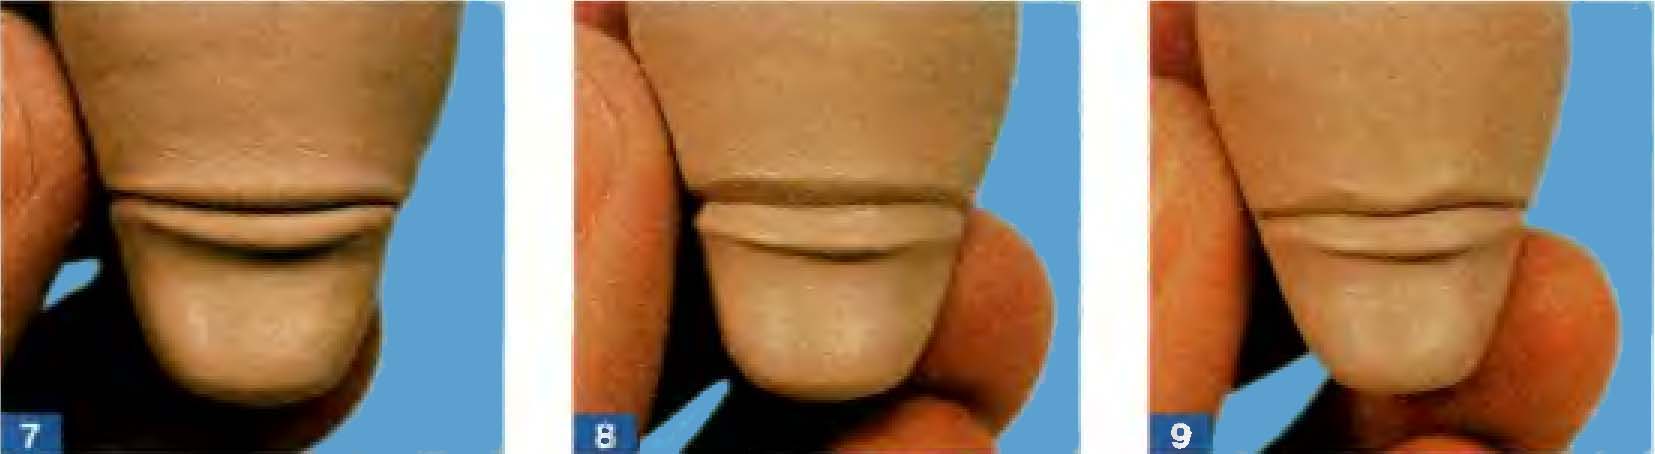 Техника изготовления губ куклы из полимерной глины